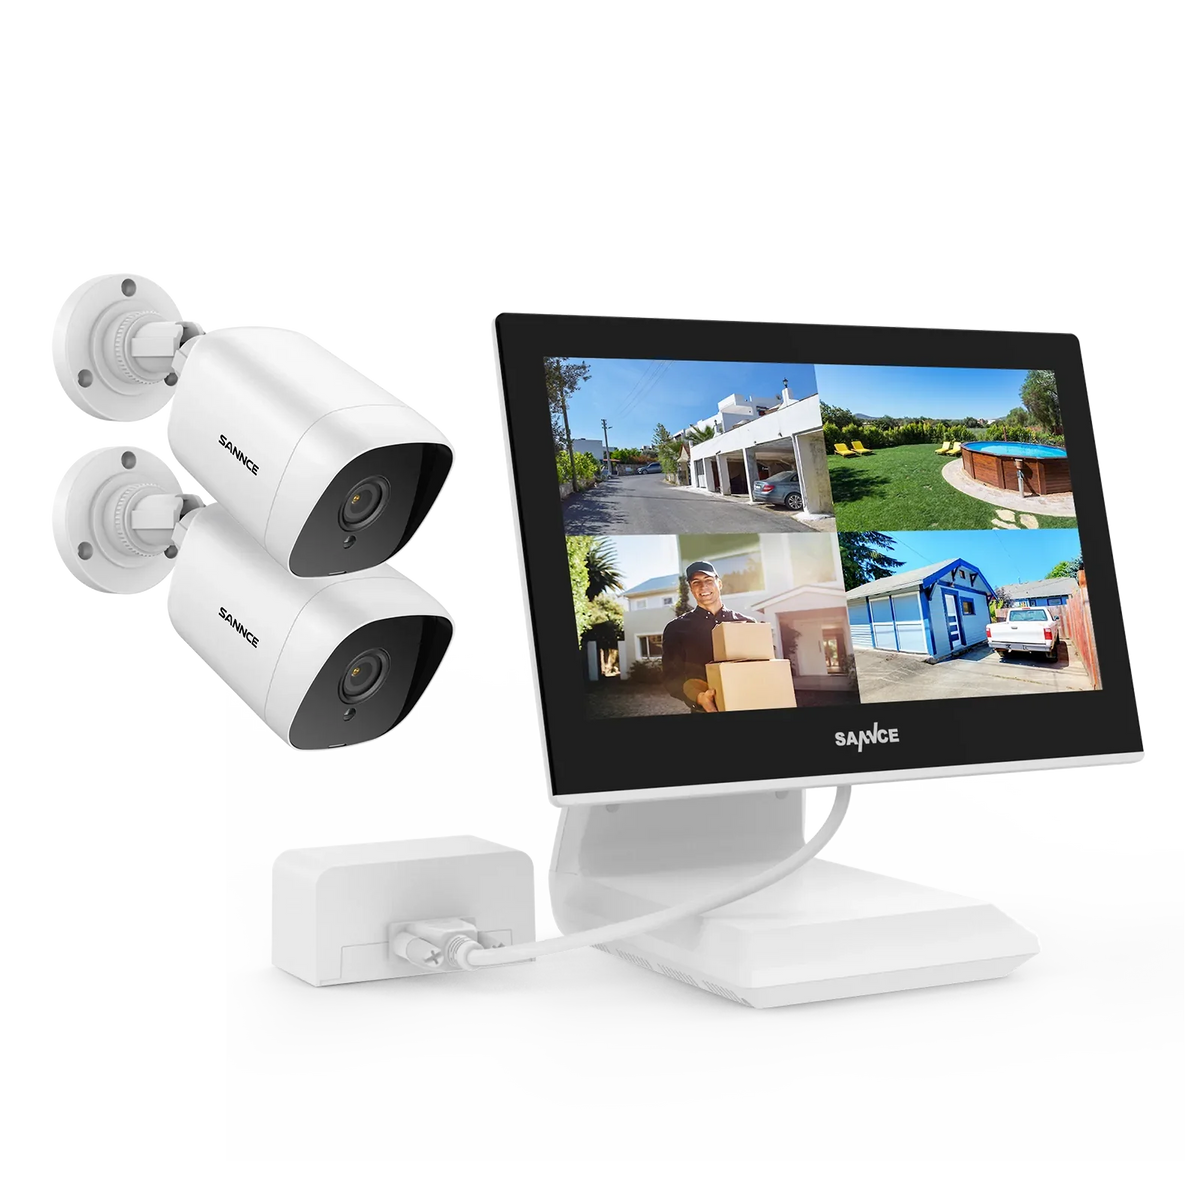 Système de vidéosurveillance extérieur - 2 Caméras 1080p 2MP IP66 + DVR 4CH avec Ecran LCD 10.1"